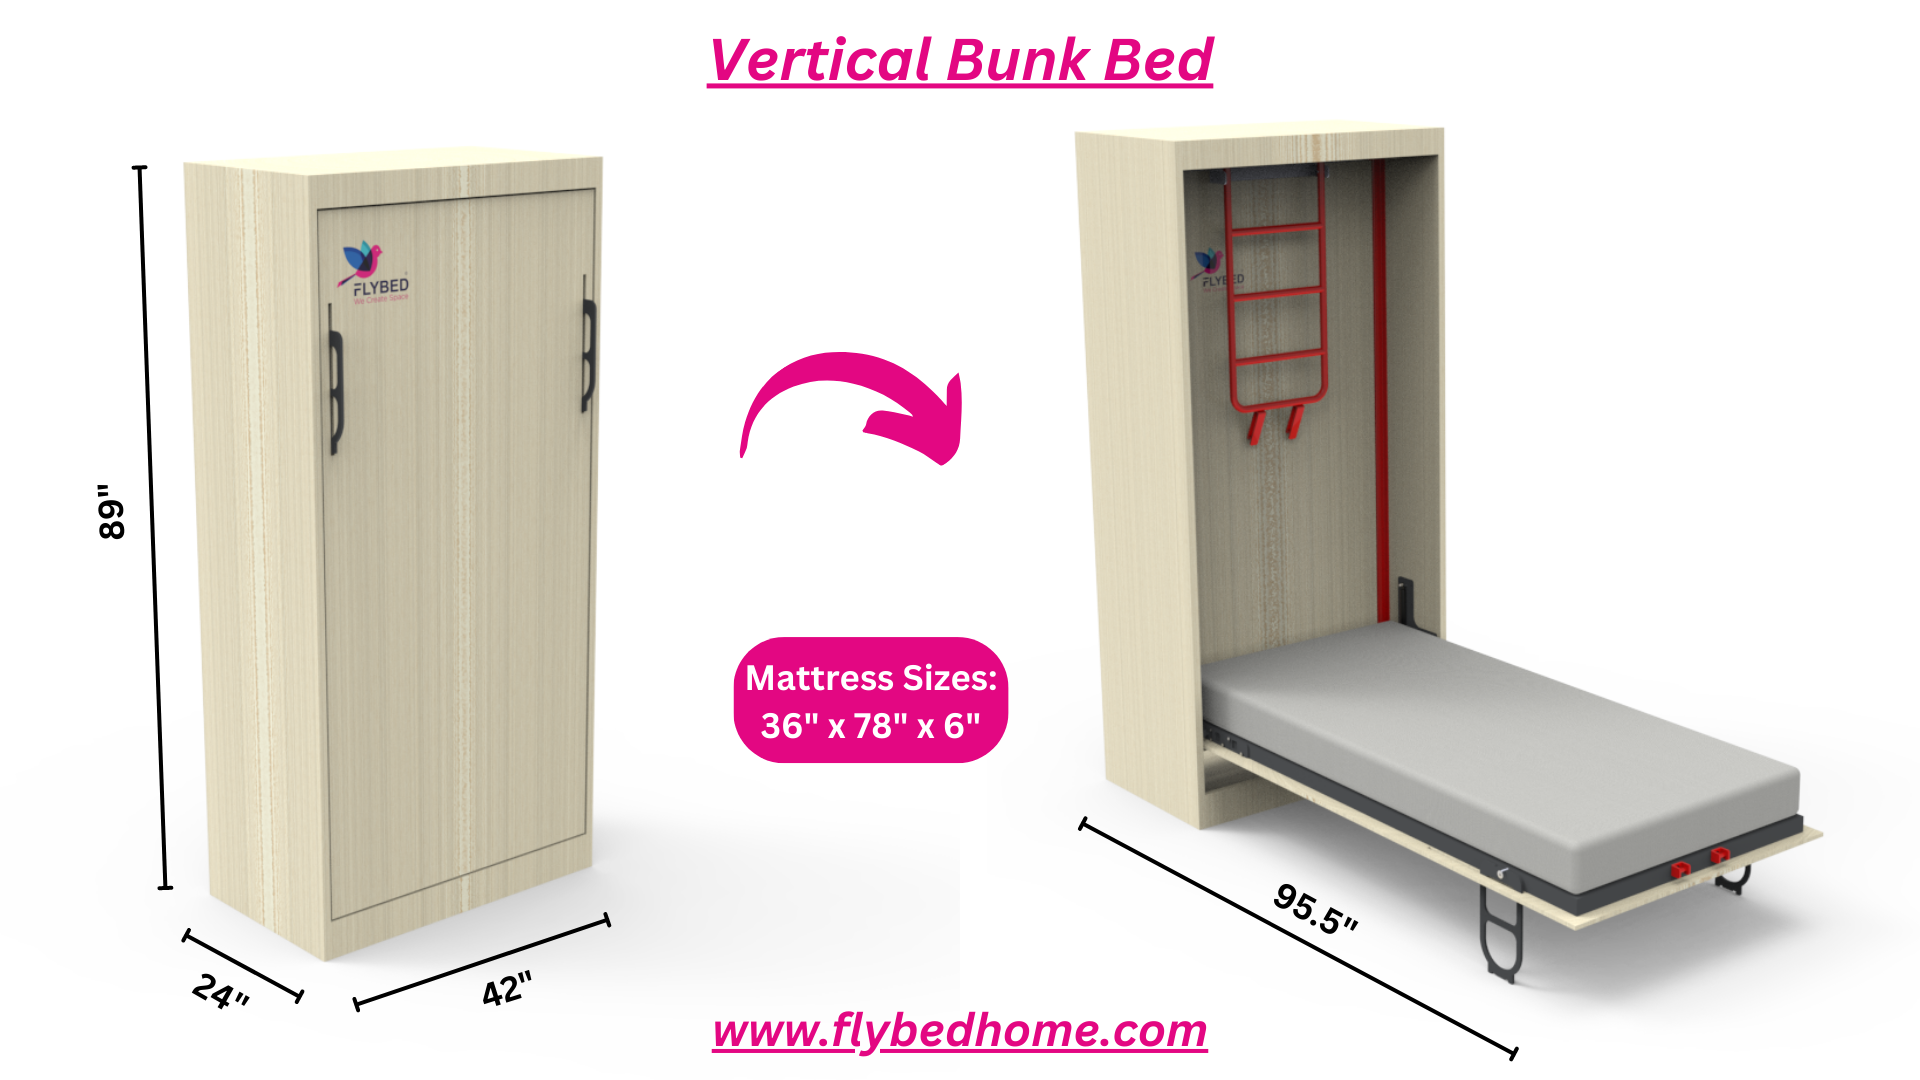 Vertical Bunk bed